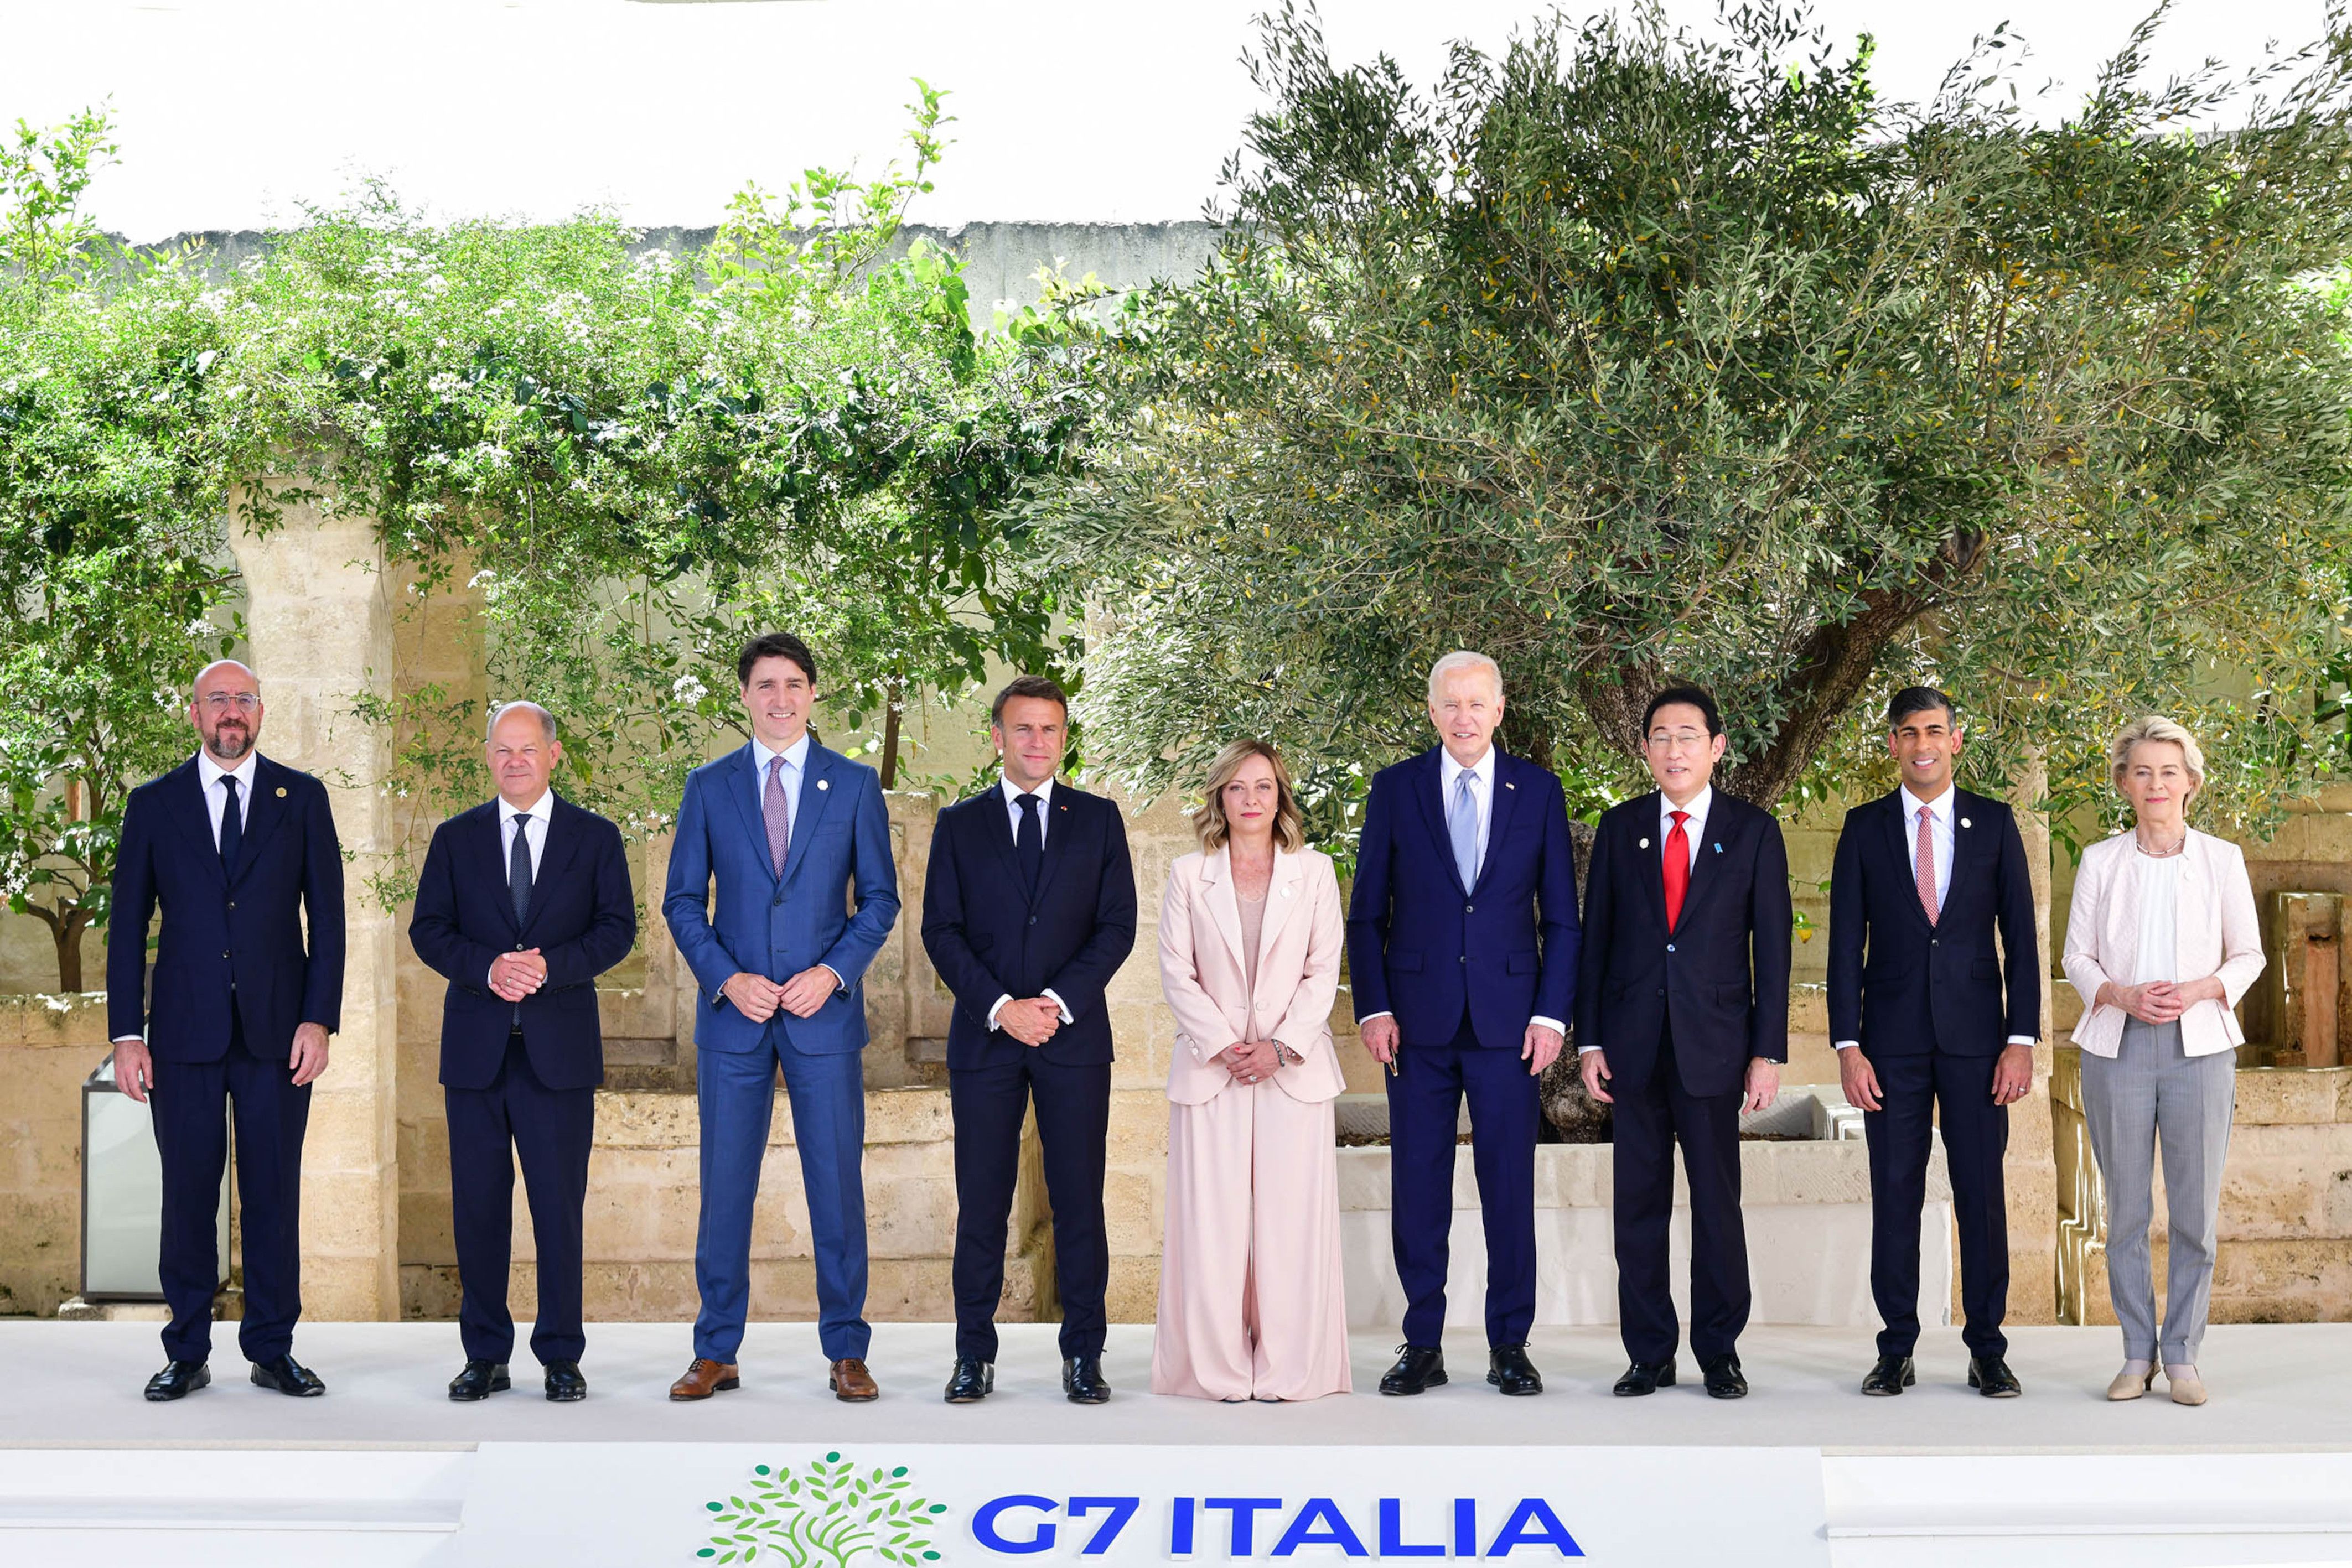 Representants de les principals democràcies del món, el G-7, en la trobada a Itàlia